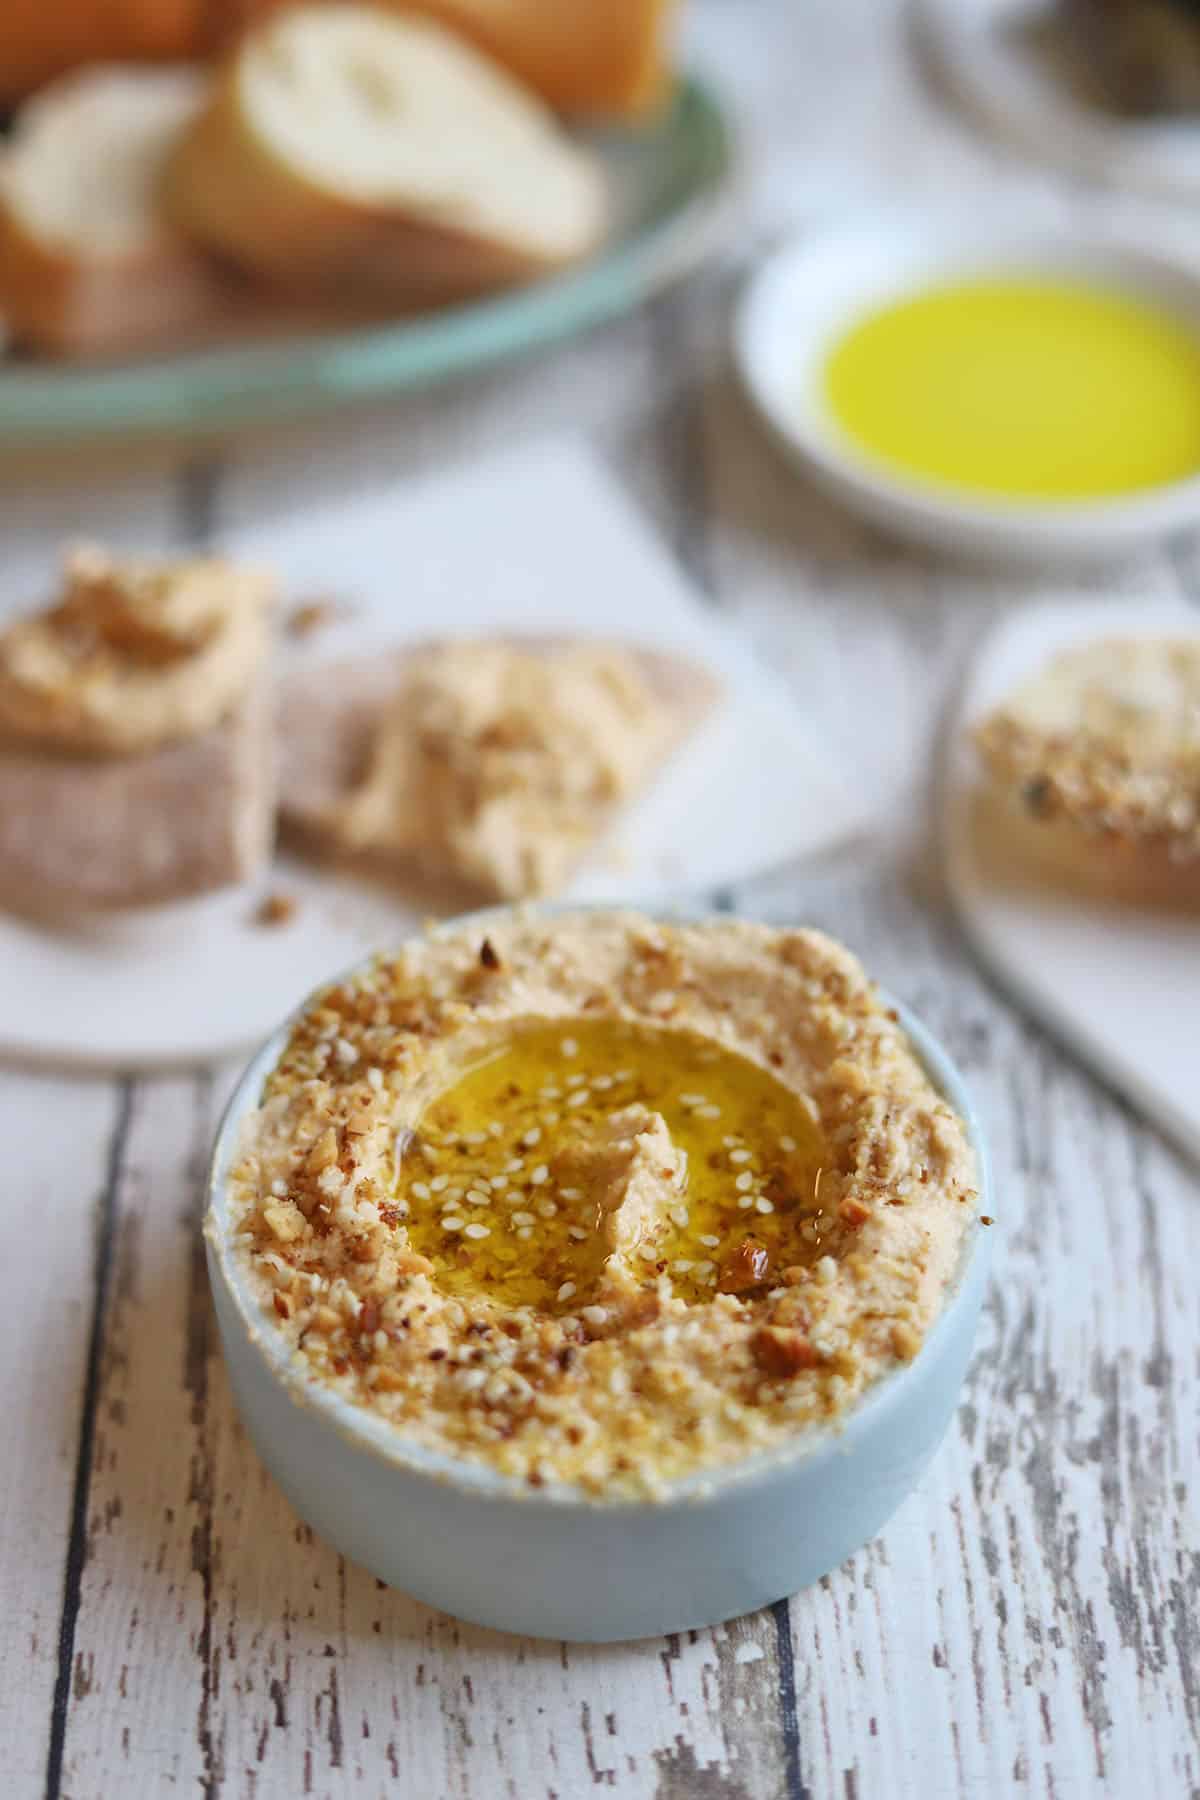 Dukkah sprinkled on bowl of hummus.